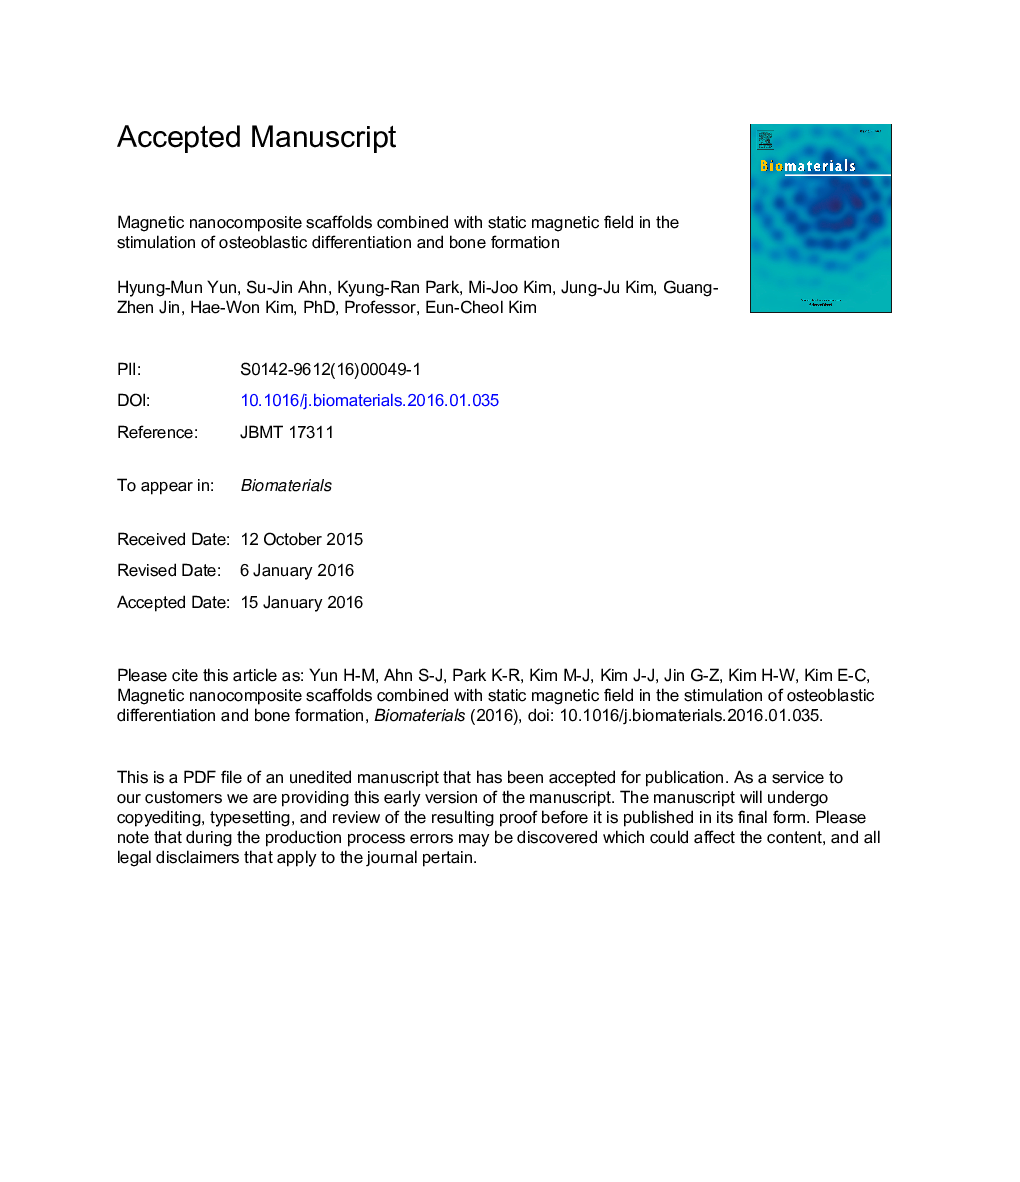 داربست نانوکامپوزیت مغناطیسی همراه با میدان مغناطیسی استاتیک در تحریک تمایز استئوبلاستیک و تشکیل استخوان 